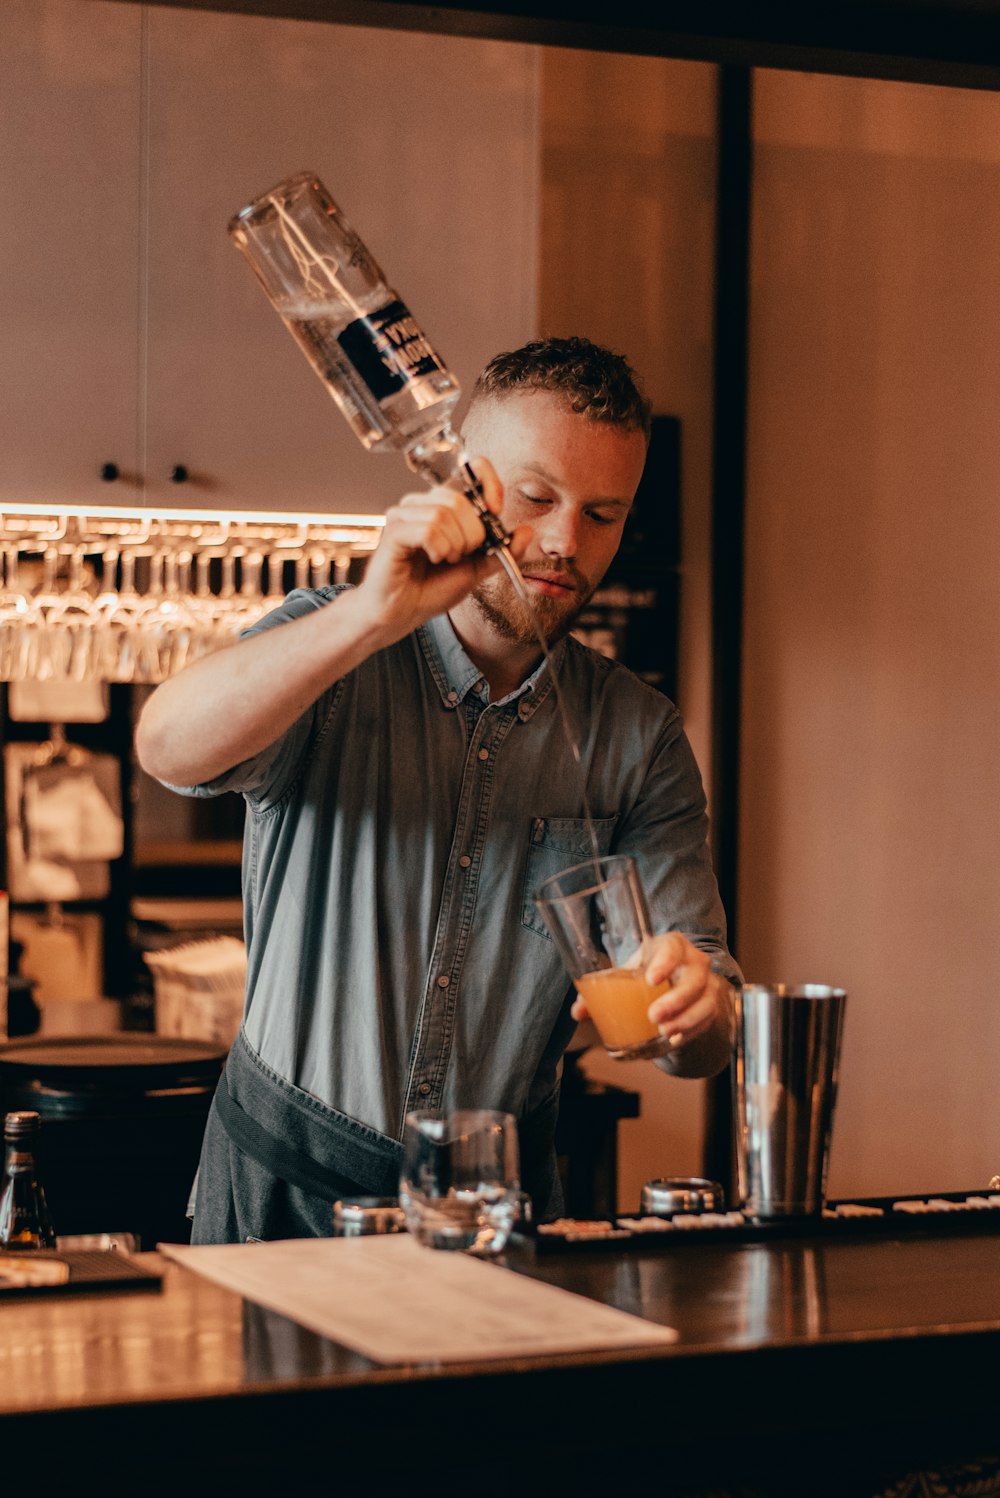 Un homme prépare un verre dans un bar